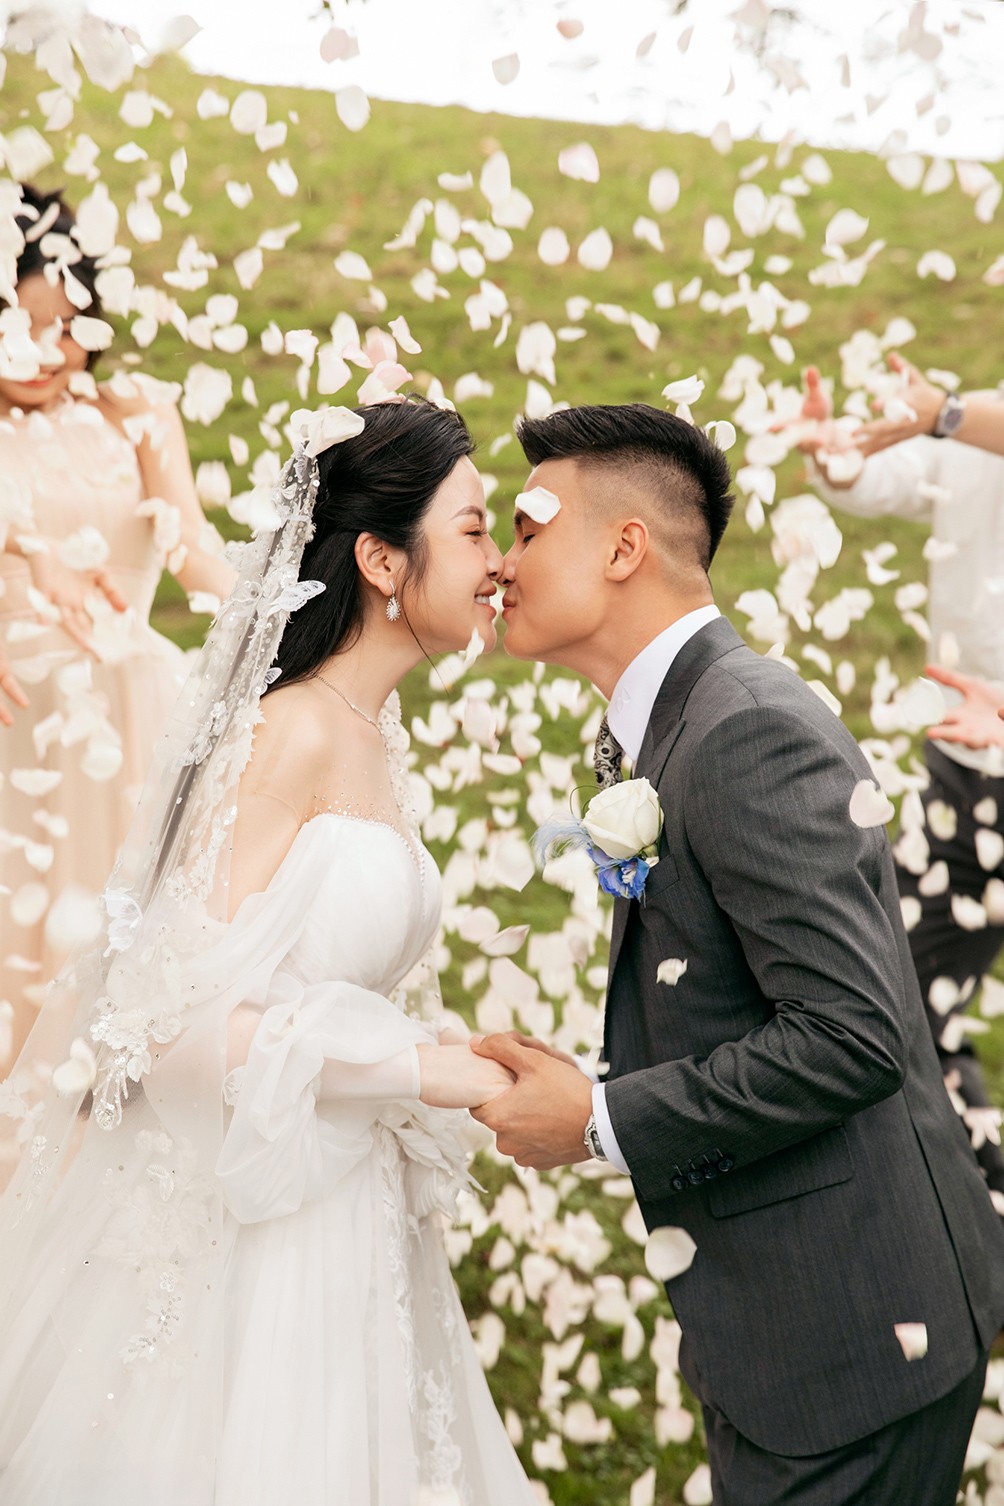 Đám cưới Quang Hải - Chu Thanh Huyền: Cô dâu thay 2 váy cưới, chú rể bảnh bao, lịch lãm - 19